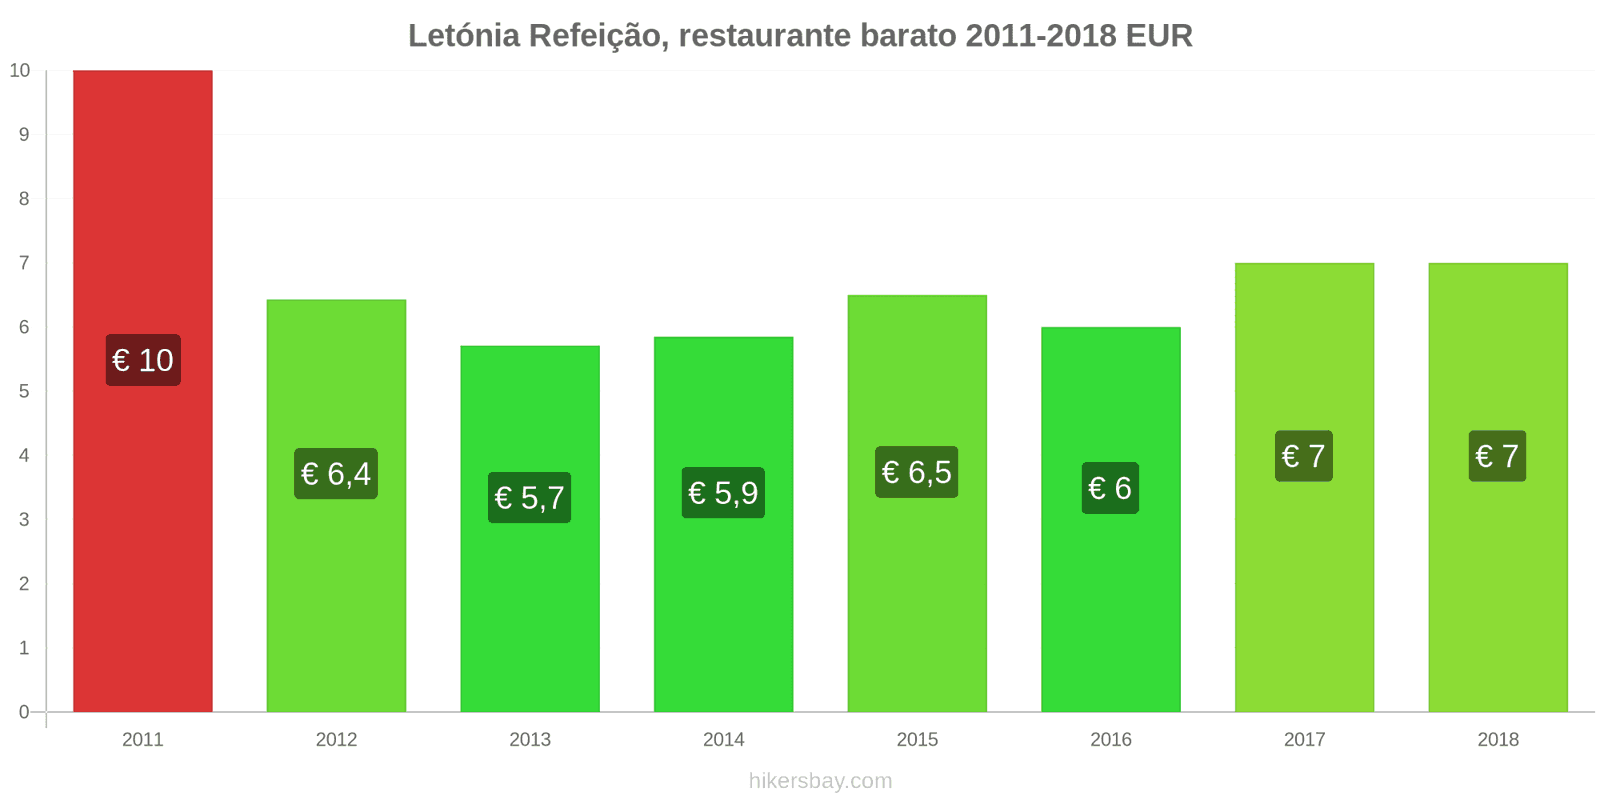 Letónia mudanças de preços Refeição em um restaurante econômico hikersbay.com